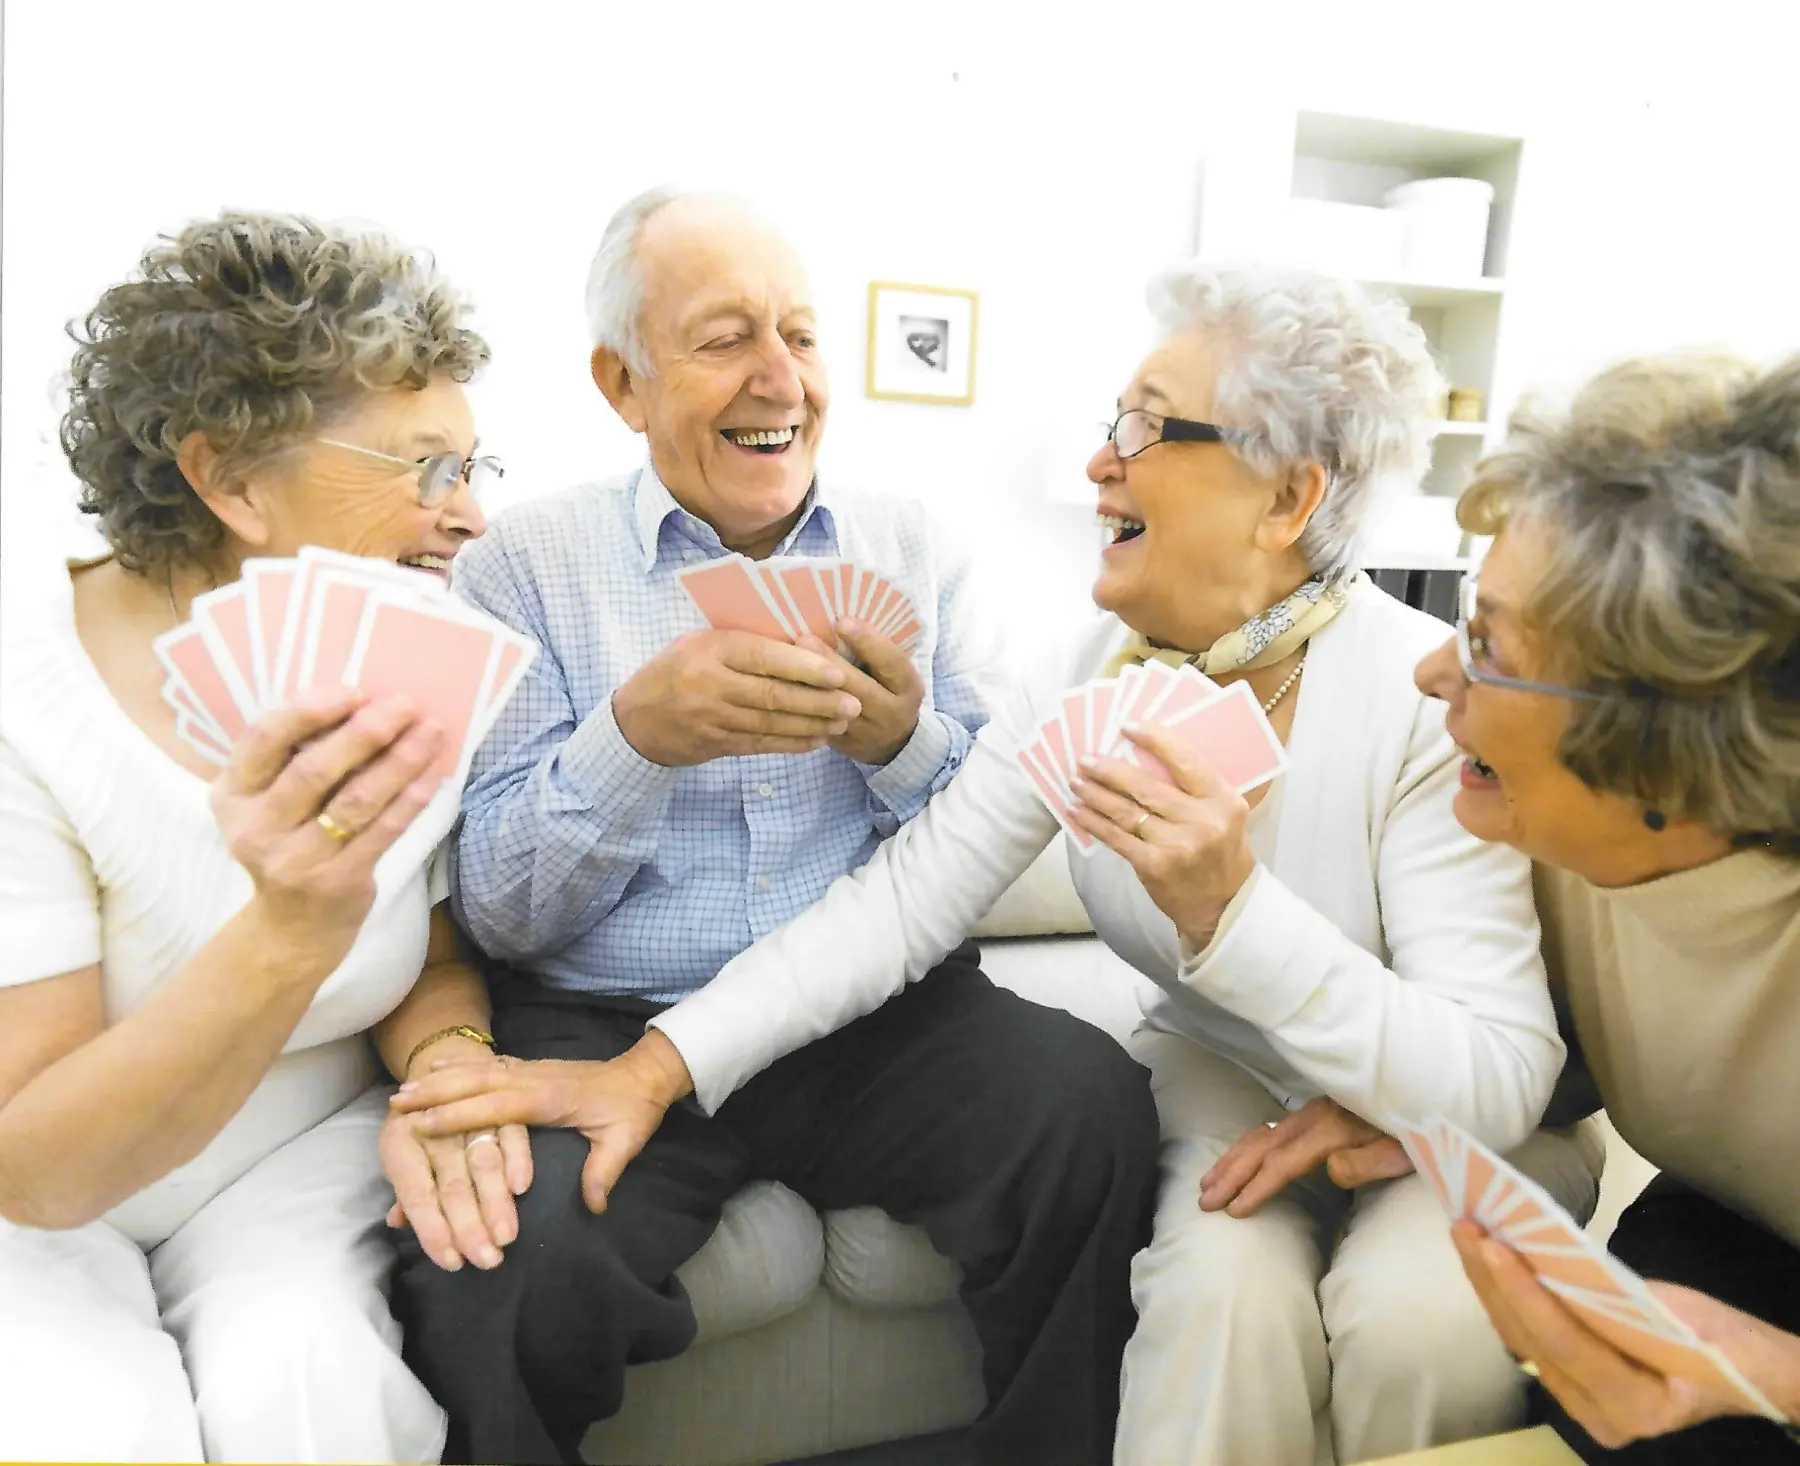 KURA-PLUS kümmert sich um ältere Menschen